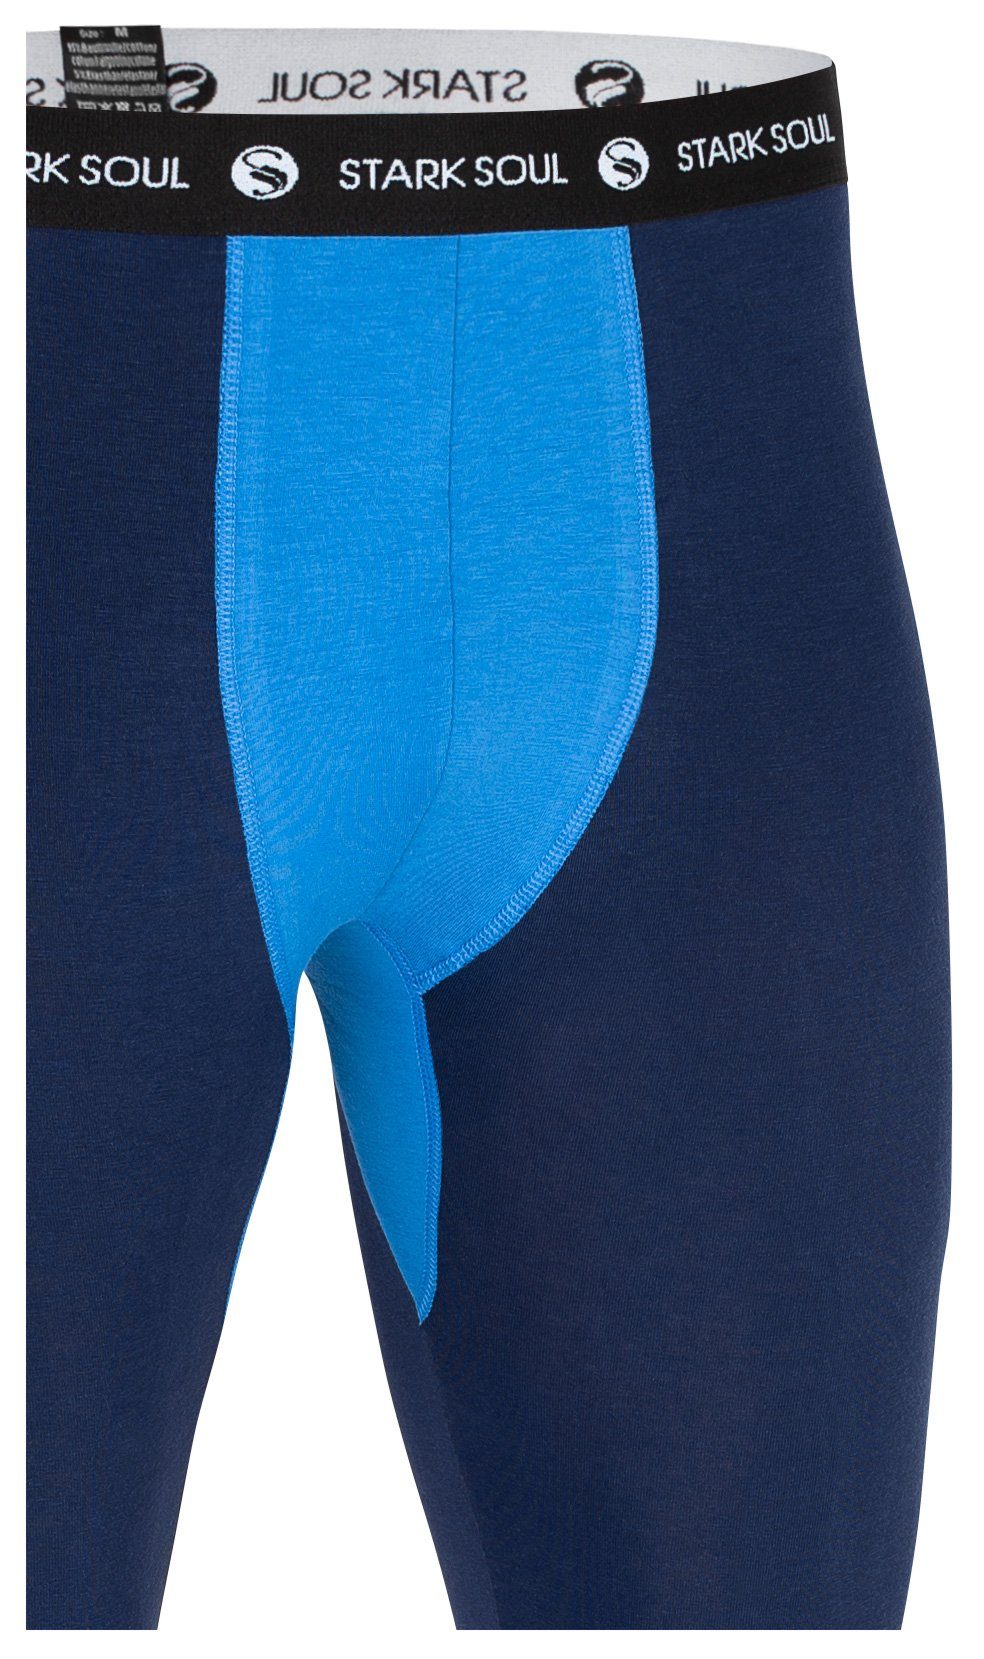 Web-Gummibund weichem Lange Marine-Blau - Unterhose Webbund Lange Soul® Stark Unterhose mit Logo John Long